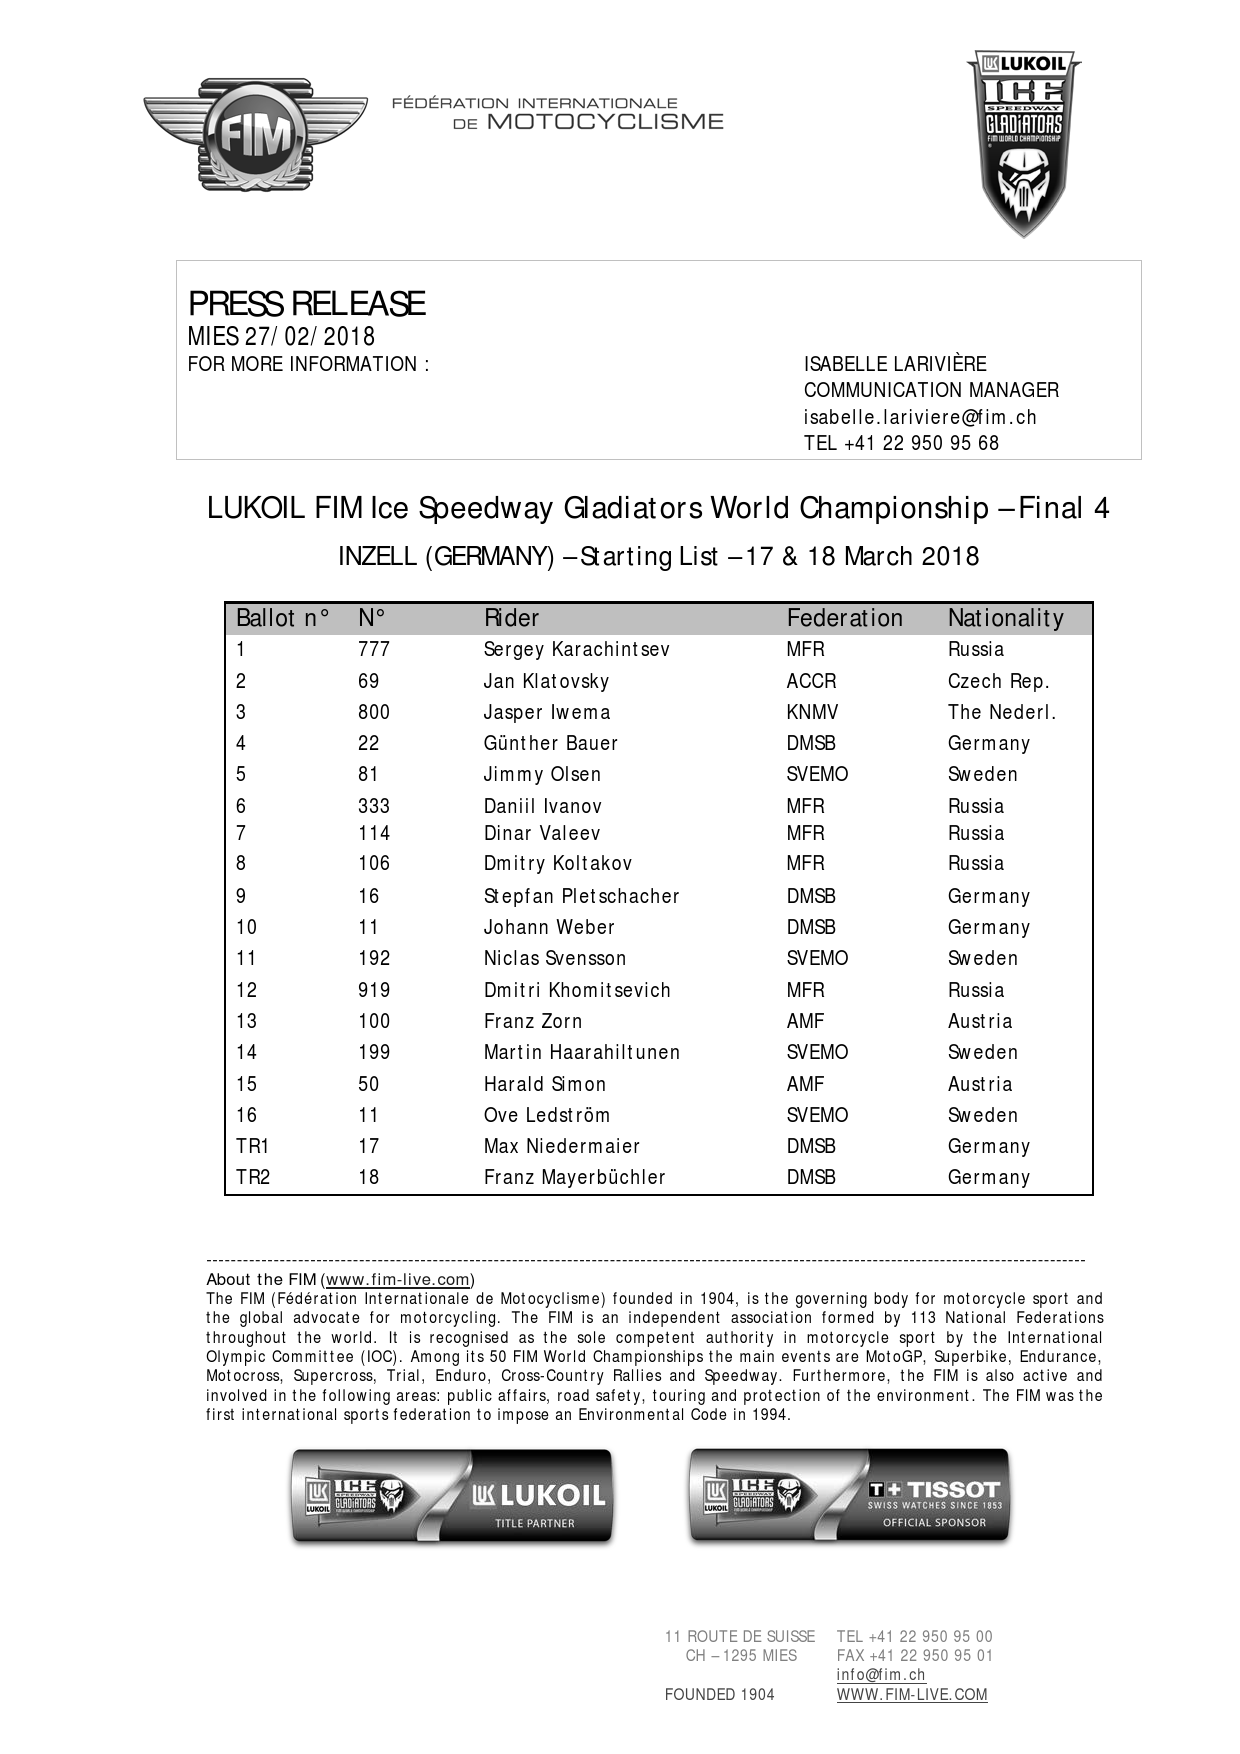 Список участников 4 этапа FIM Ice Speedway Gladiators, Инцелль 17-18 марта 2018